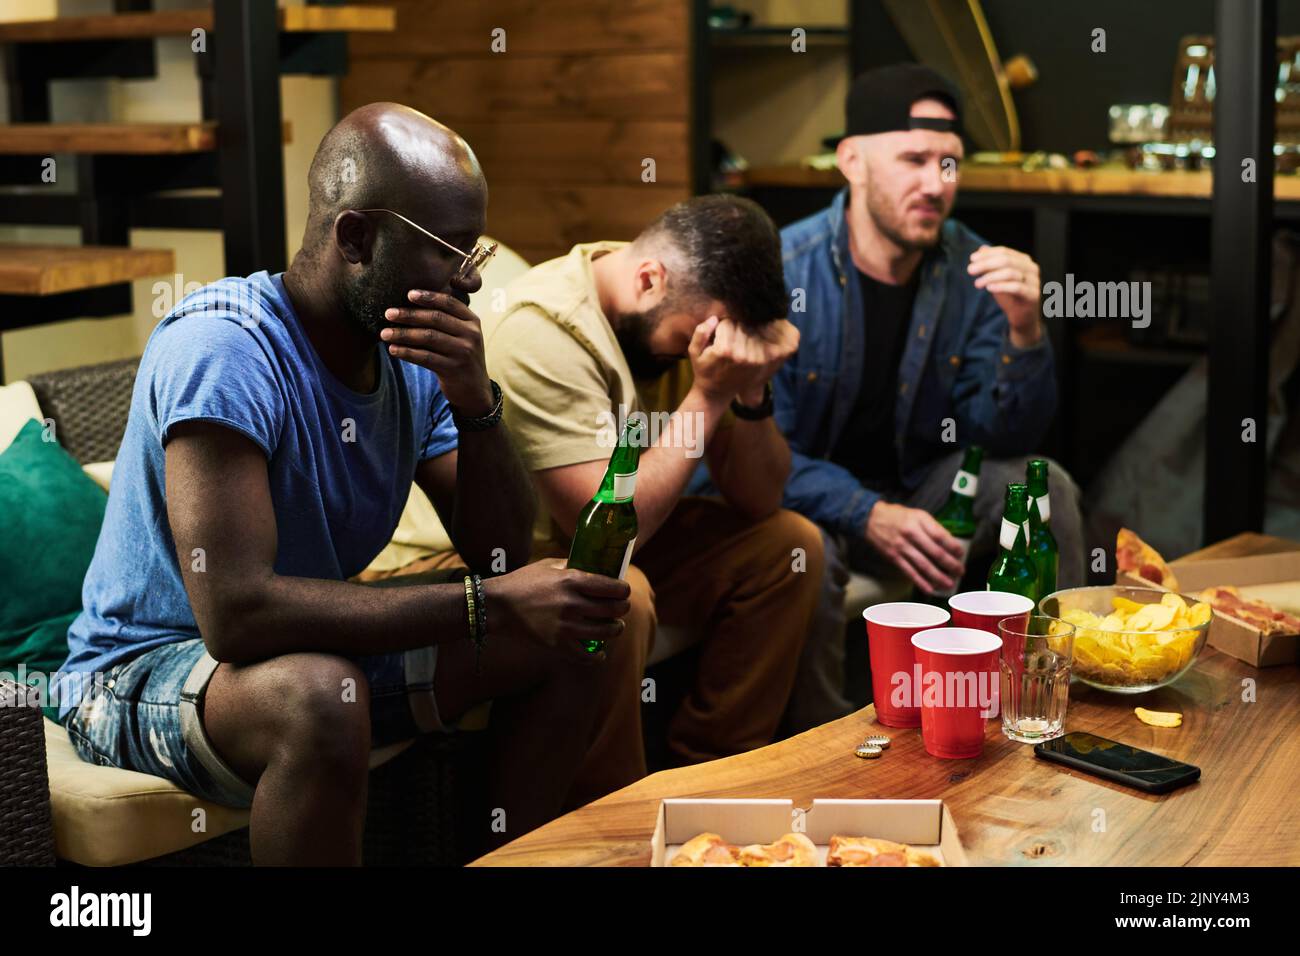 Grupo de jóvenes amigos molestos que expresan tristeza por su equipo de fútbol favorito mientras se sientan delante de la televisión y ven la emisión Foto de stock